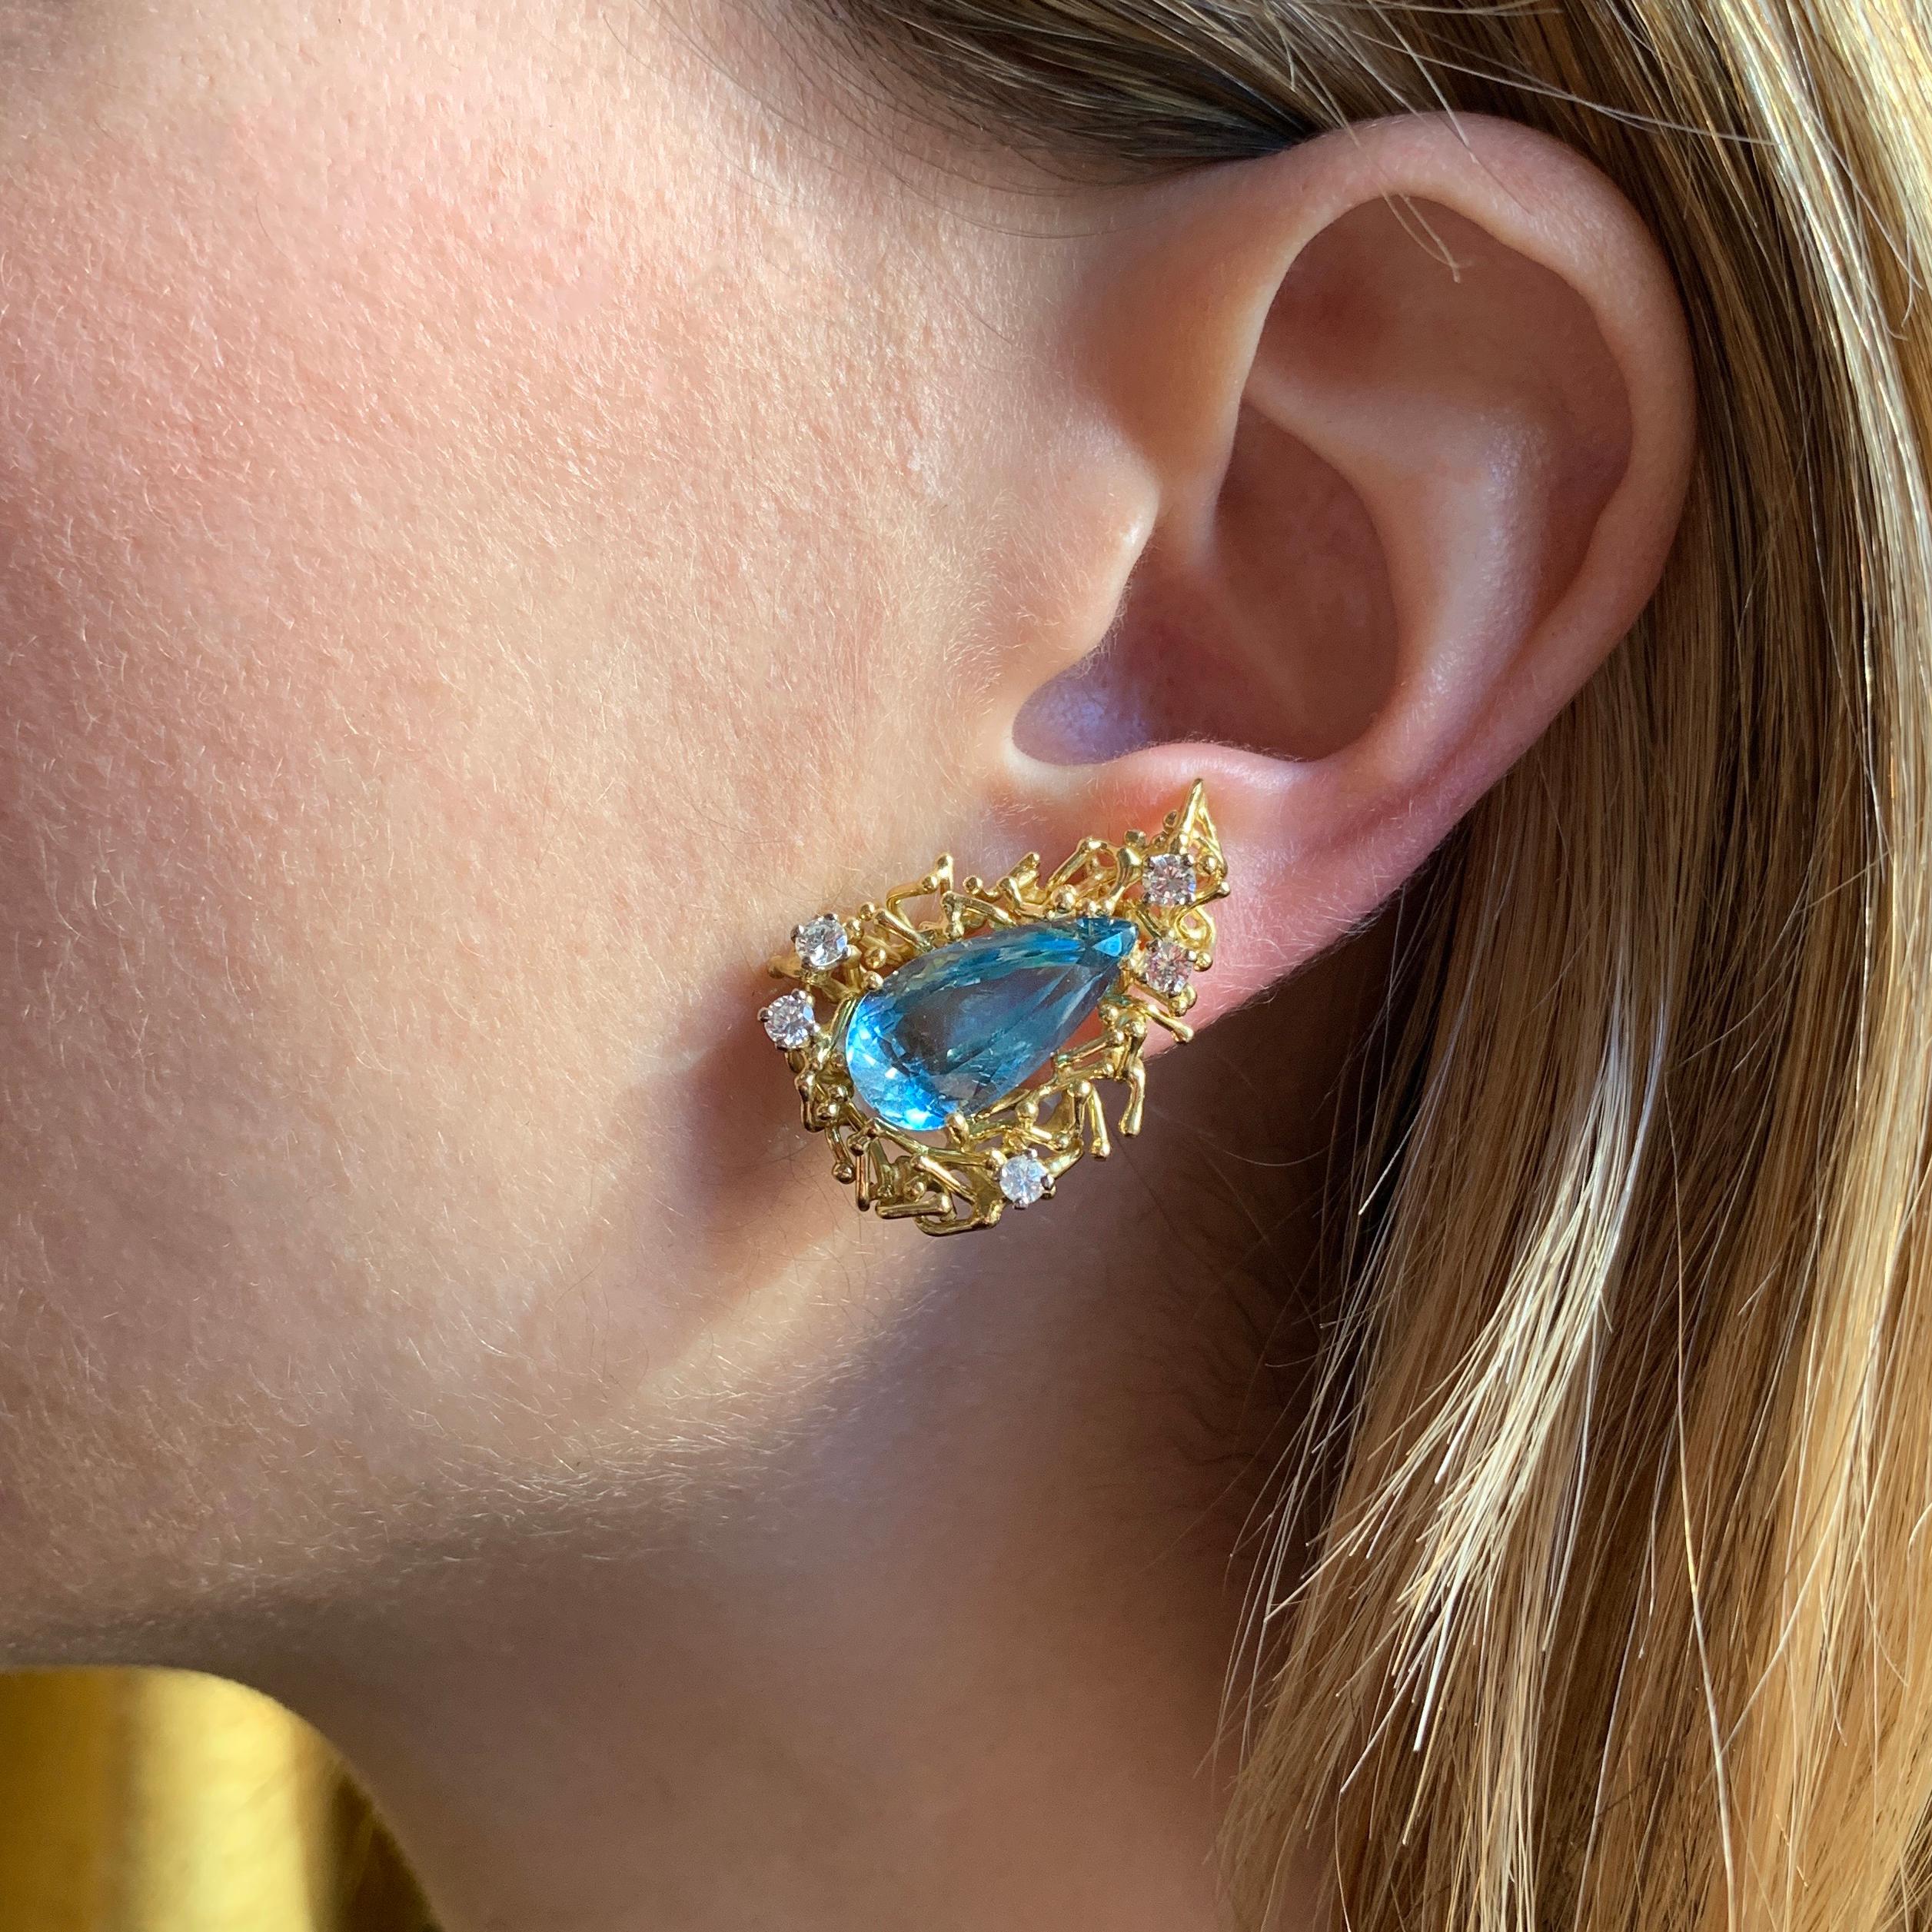 Paire de boucles d'oreilles en aigue-marine, diamant et or 18 carats, par Alan Martin Gard, 1968. Ces boucles d'oreilles illuminent le visage et peuvent être portées de jour comme de nuit. Un pendentif assorti est listé séparément. 

Signé AMG.